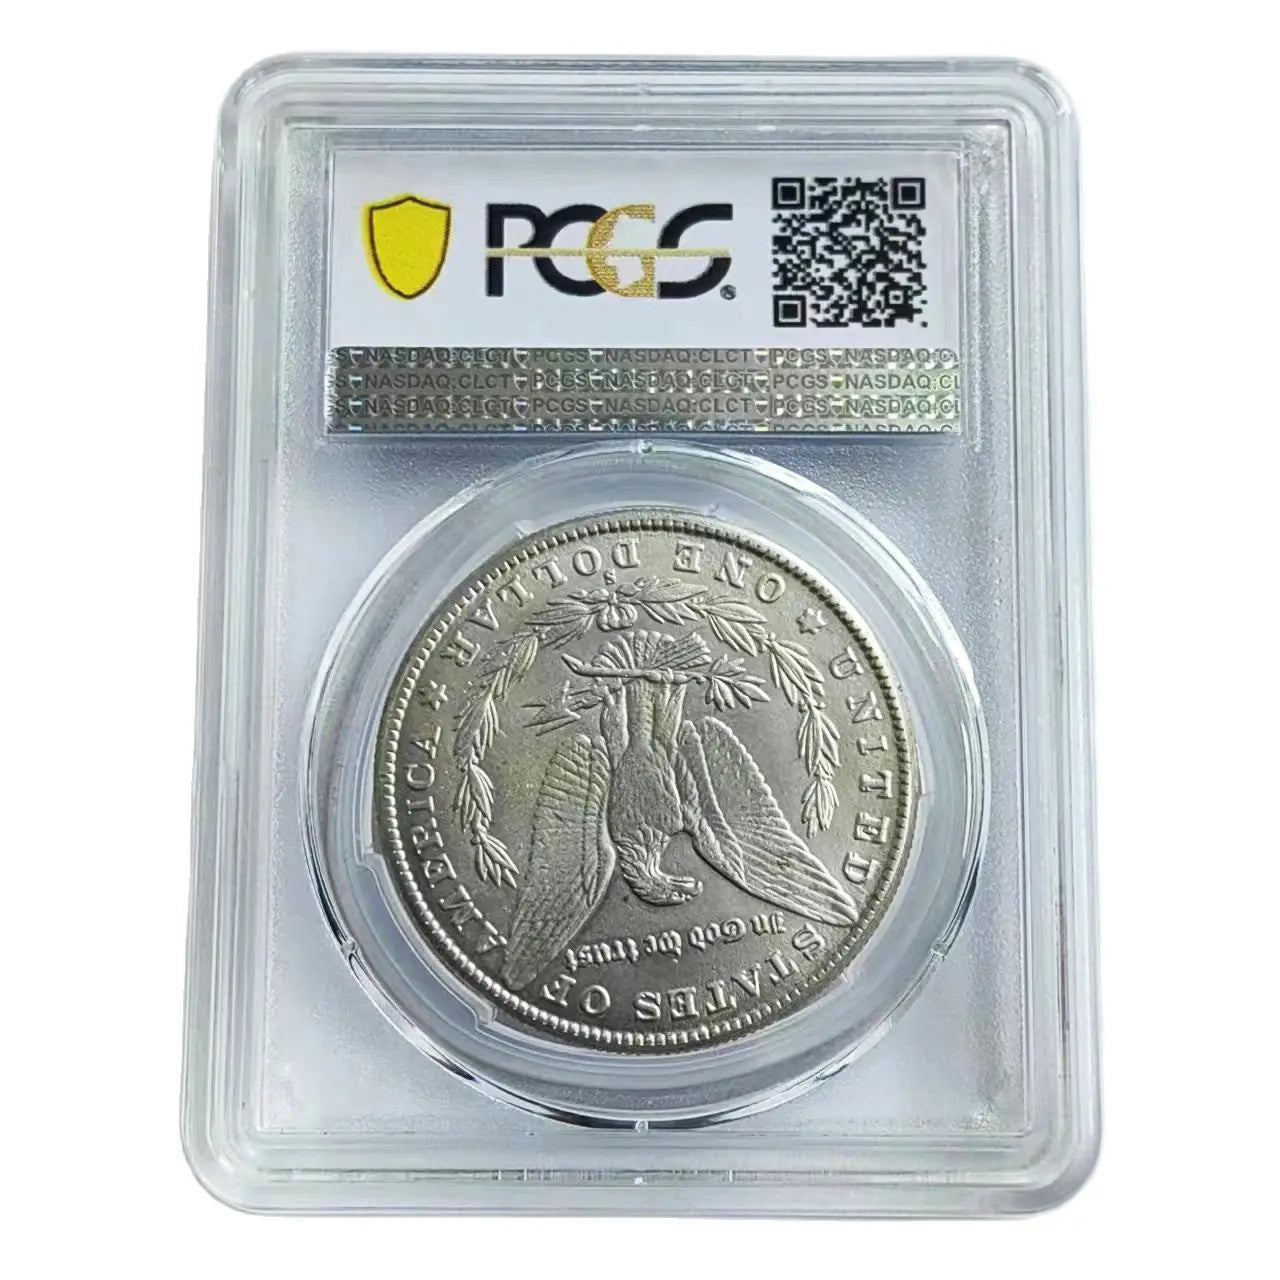 Collectible 1893-S Morgan Dollar - Iconic Silver Coin